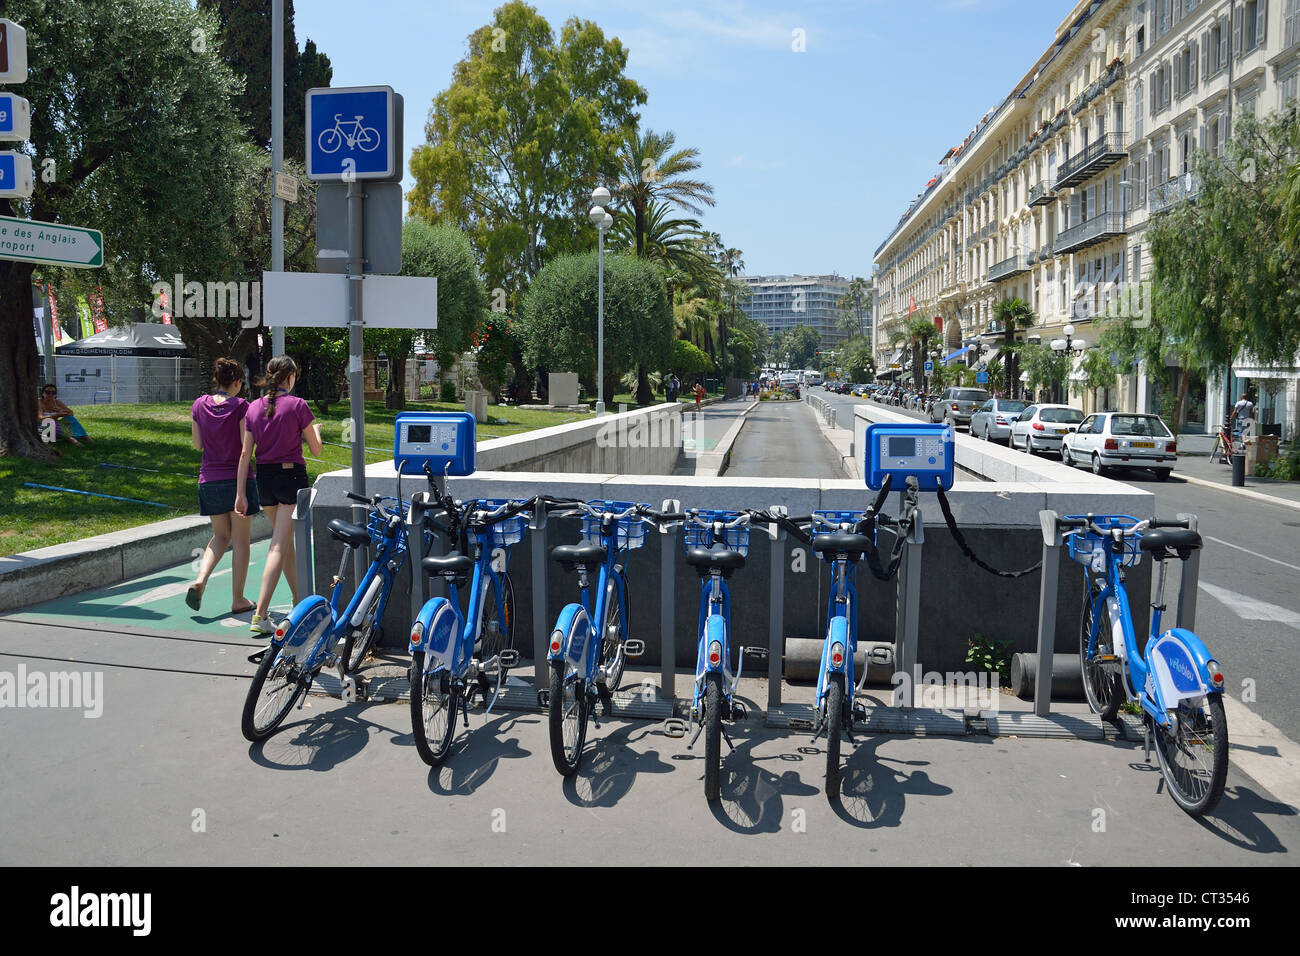 Vélo Bleu self-service bicycle station, Place Masséna, Nice, Côte d'Azur, Alpes-Maritimes, Provence-Alpes-Côte d'Azur, France Stock Photo